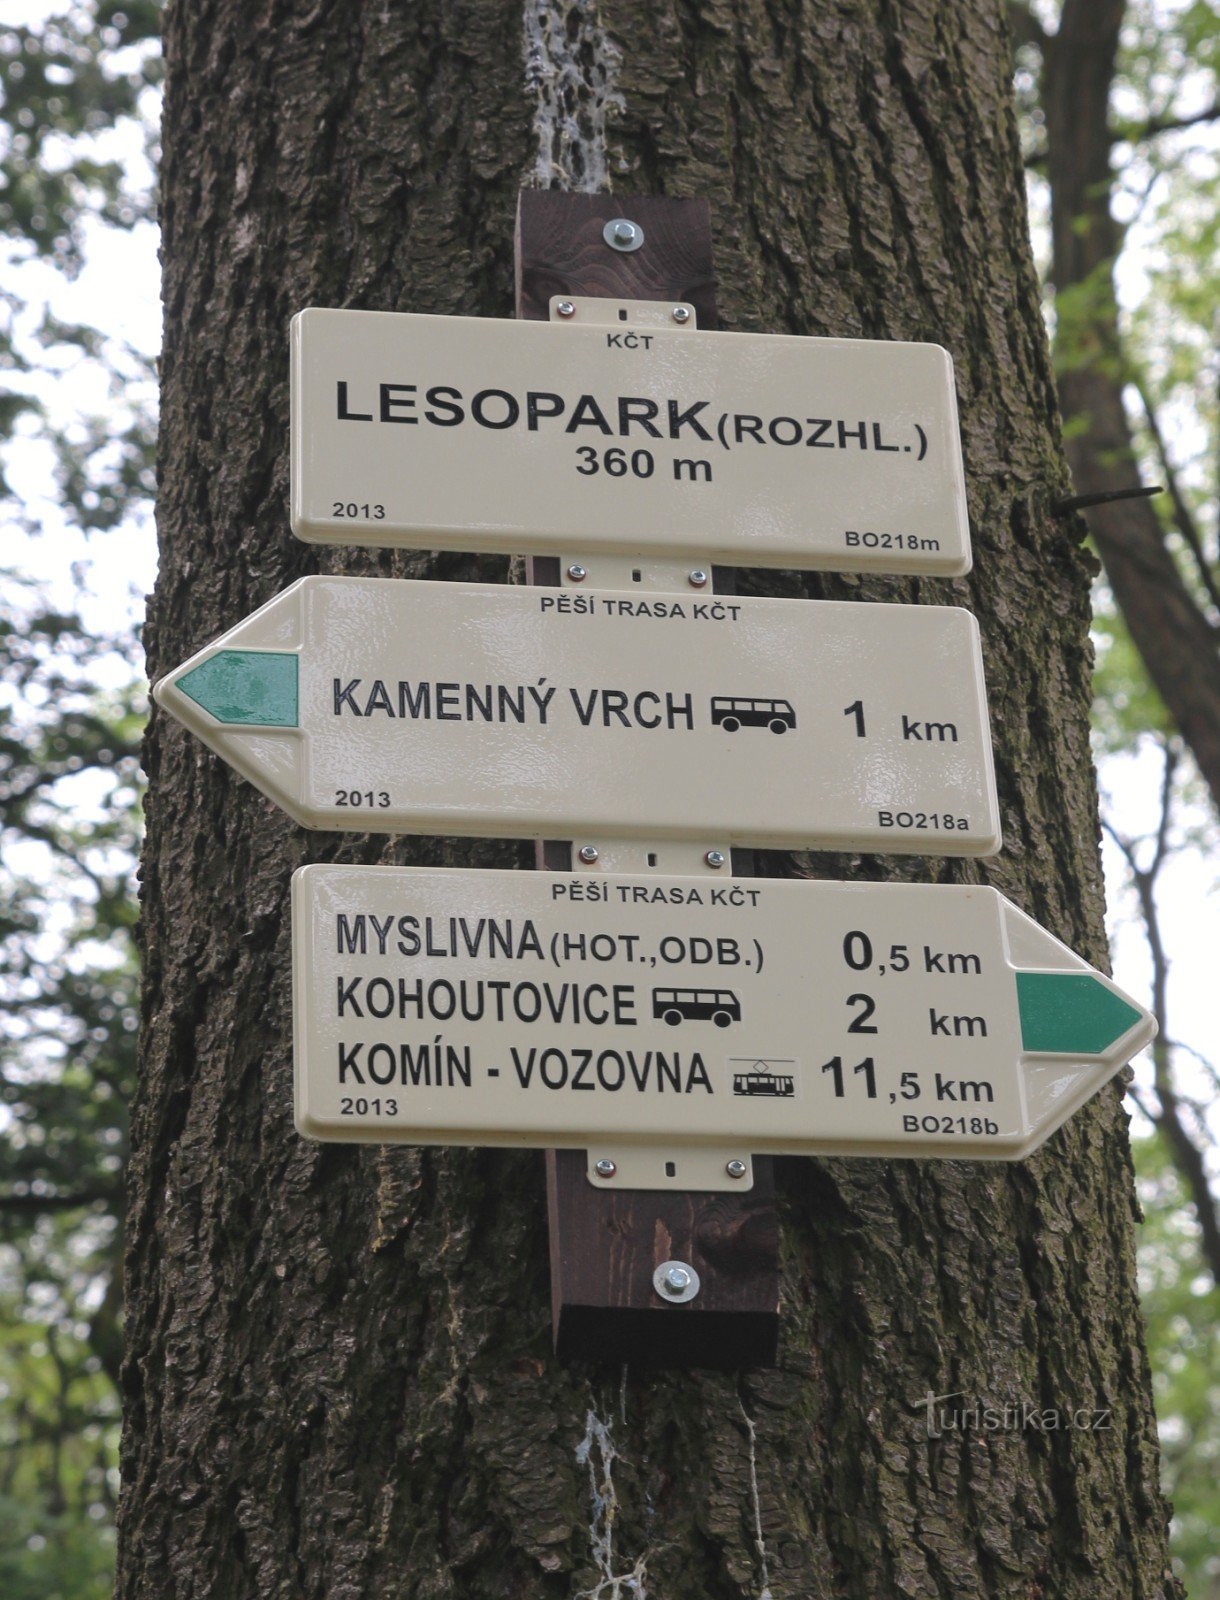 Encrucijada turística Lesopark